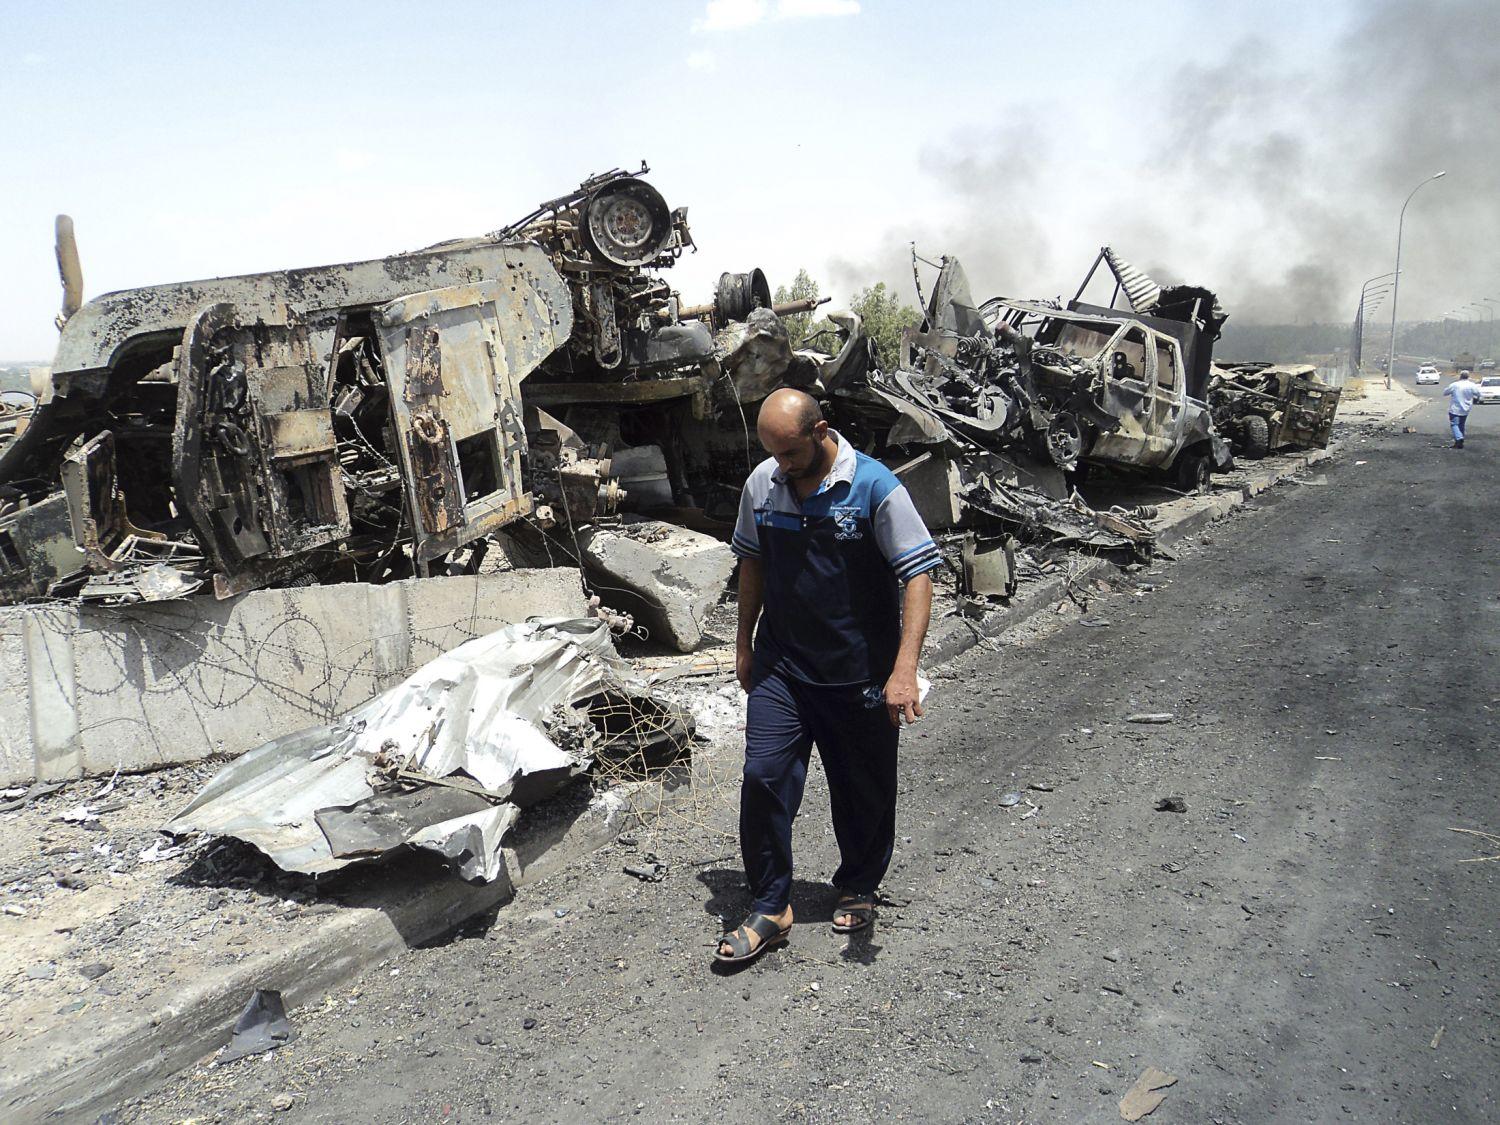 Az iraki hadsereg kiégett járművei a szunita radikálisok által kontrollált területen